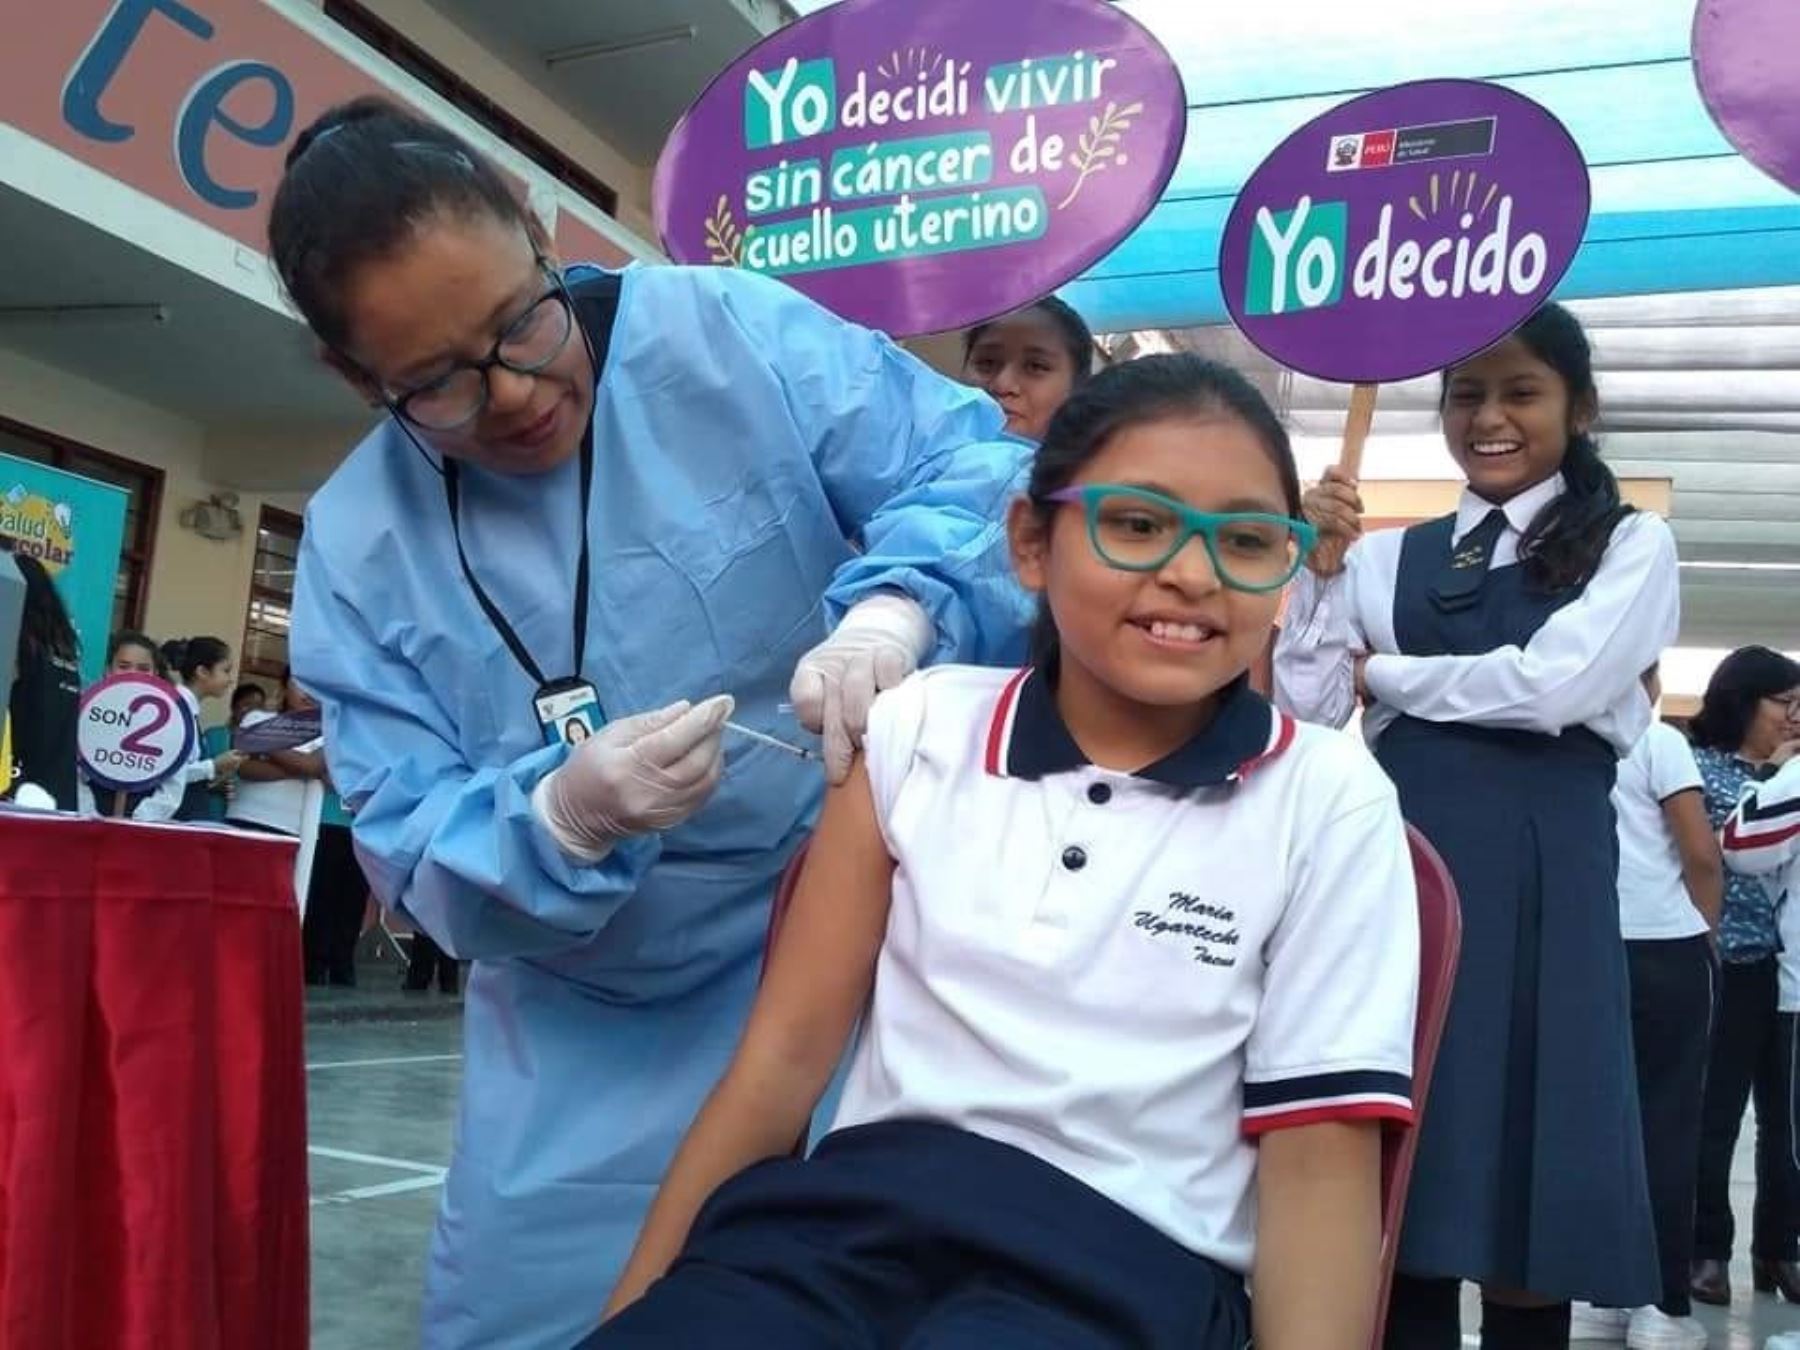 Más de 10,000 niñas y niños de Tacna recibirán la vacuna contra el virus del papiloma humano, anunció hoy la Diresa.